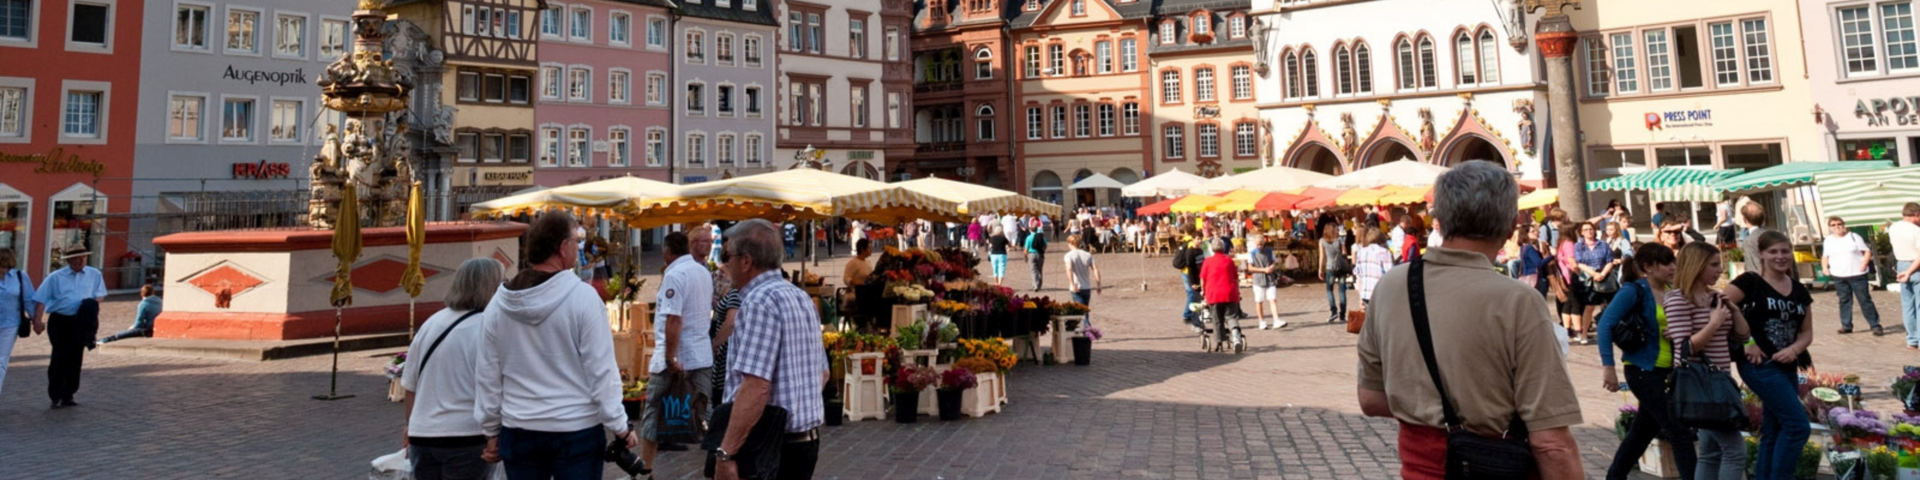 Marktplatz Trier